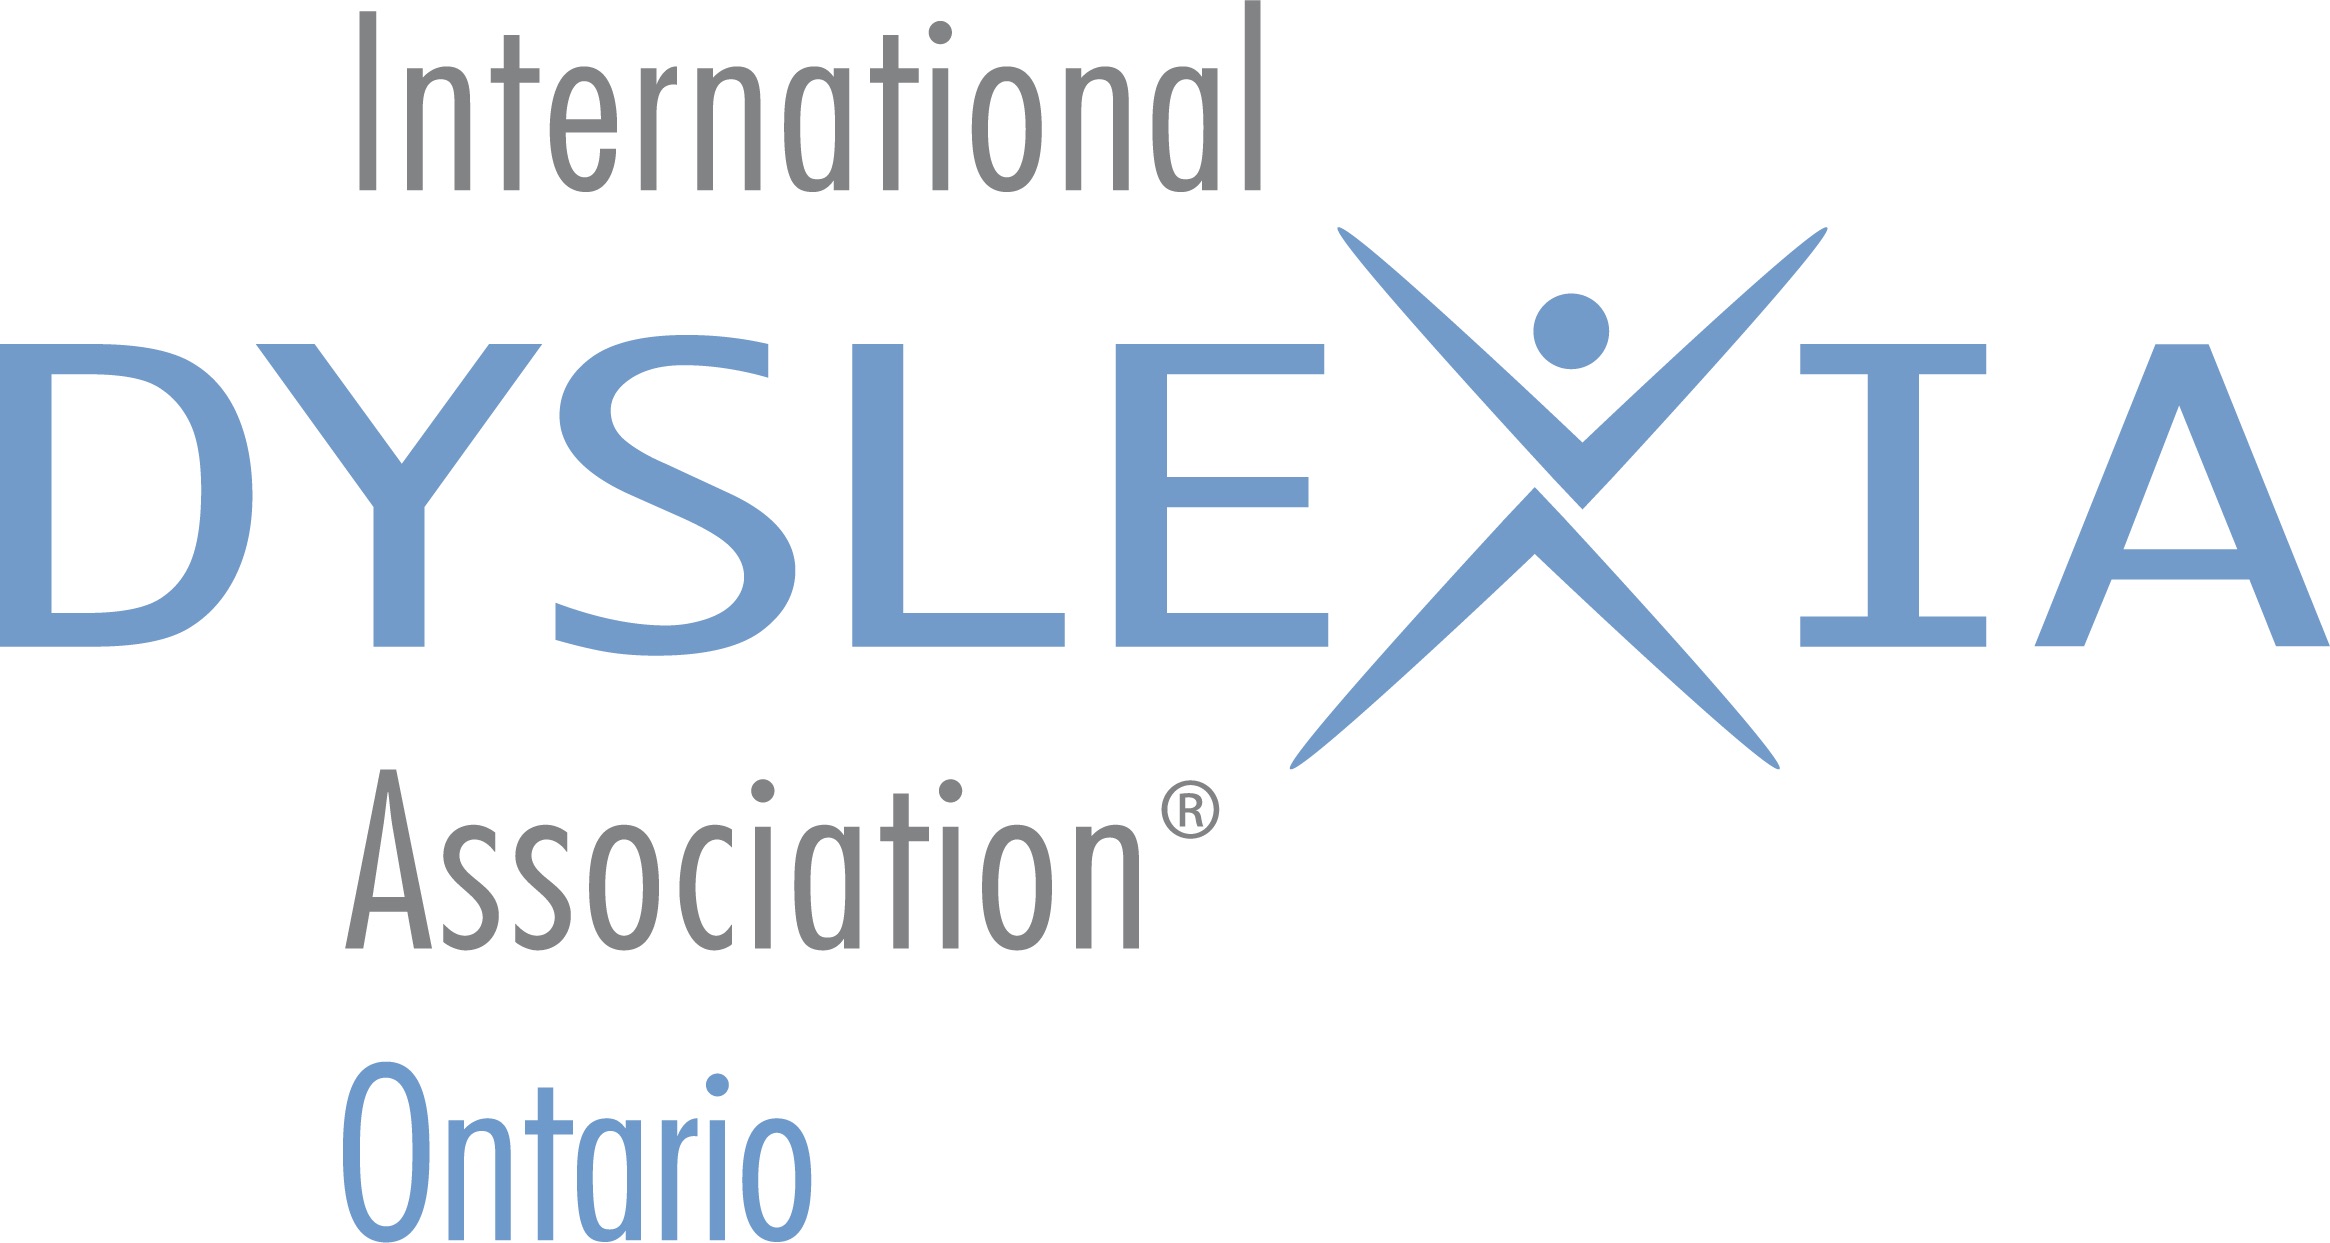 International Dyslexia Association Ontario Branch logo